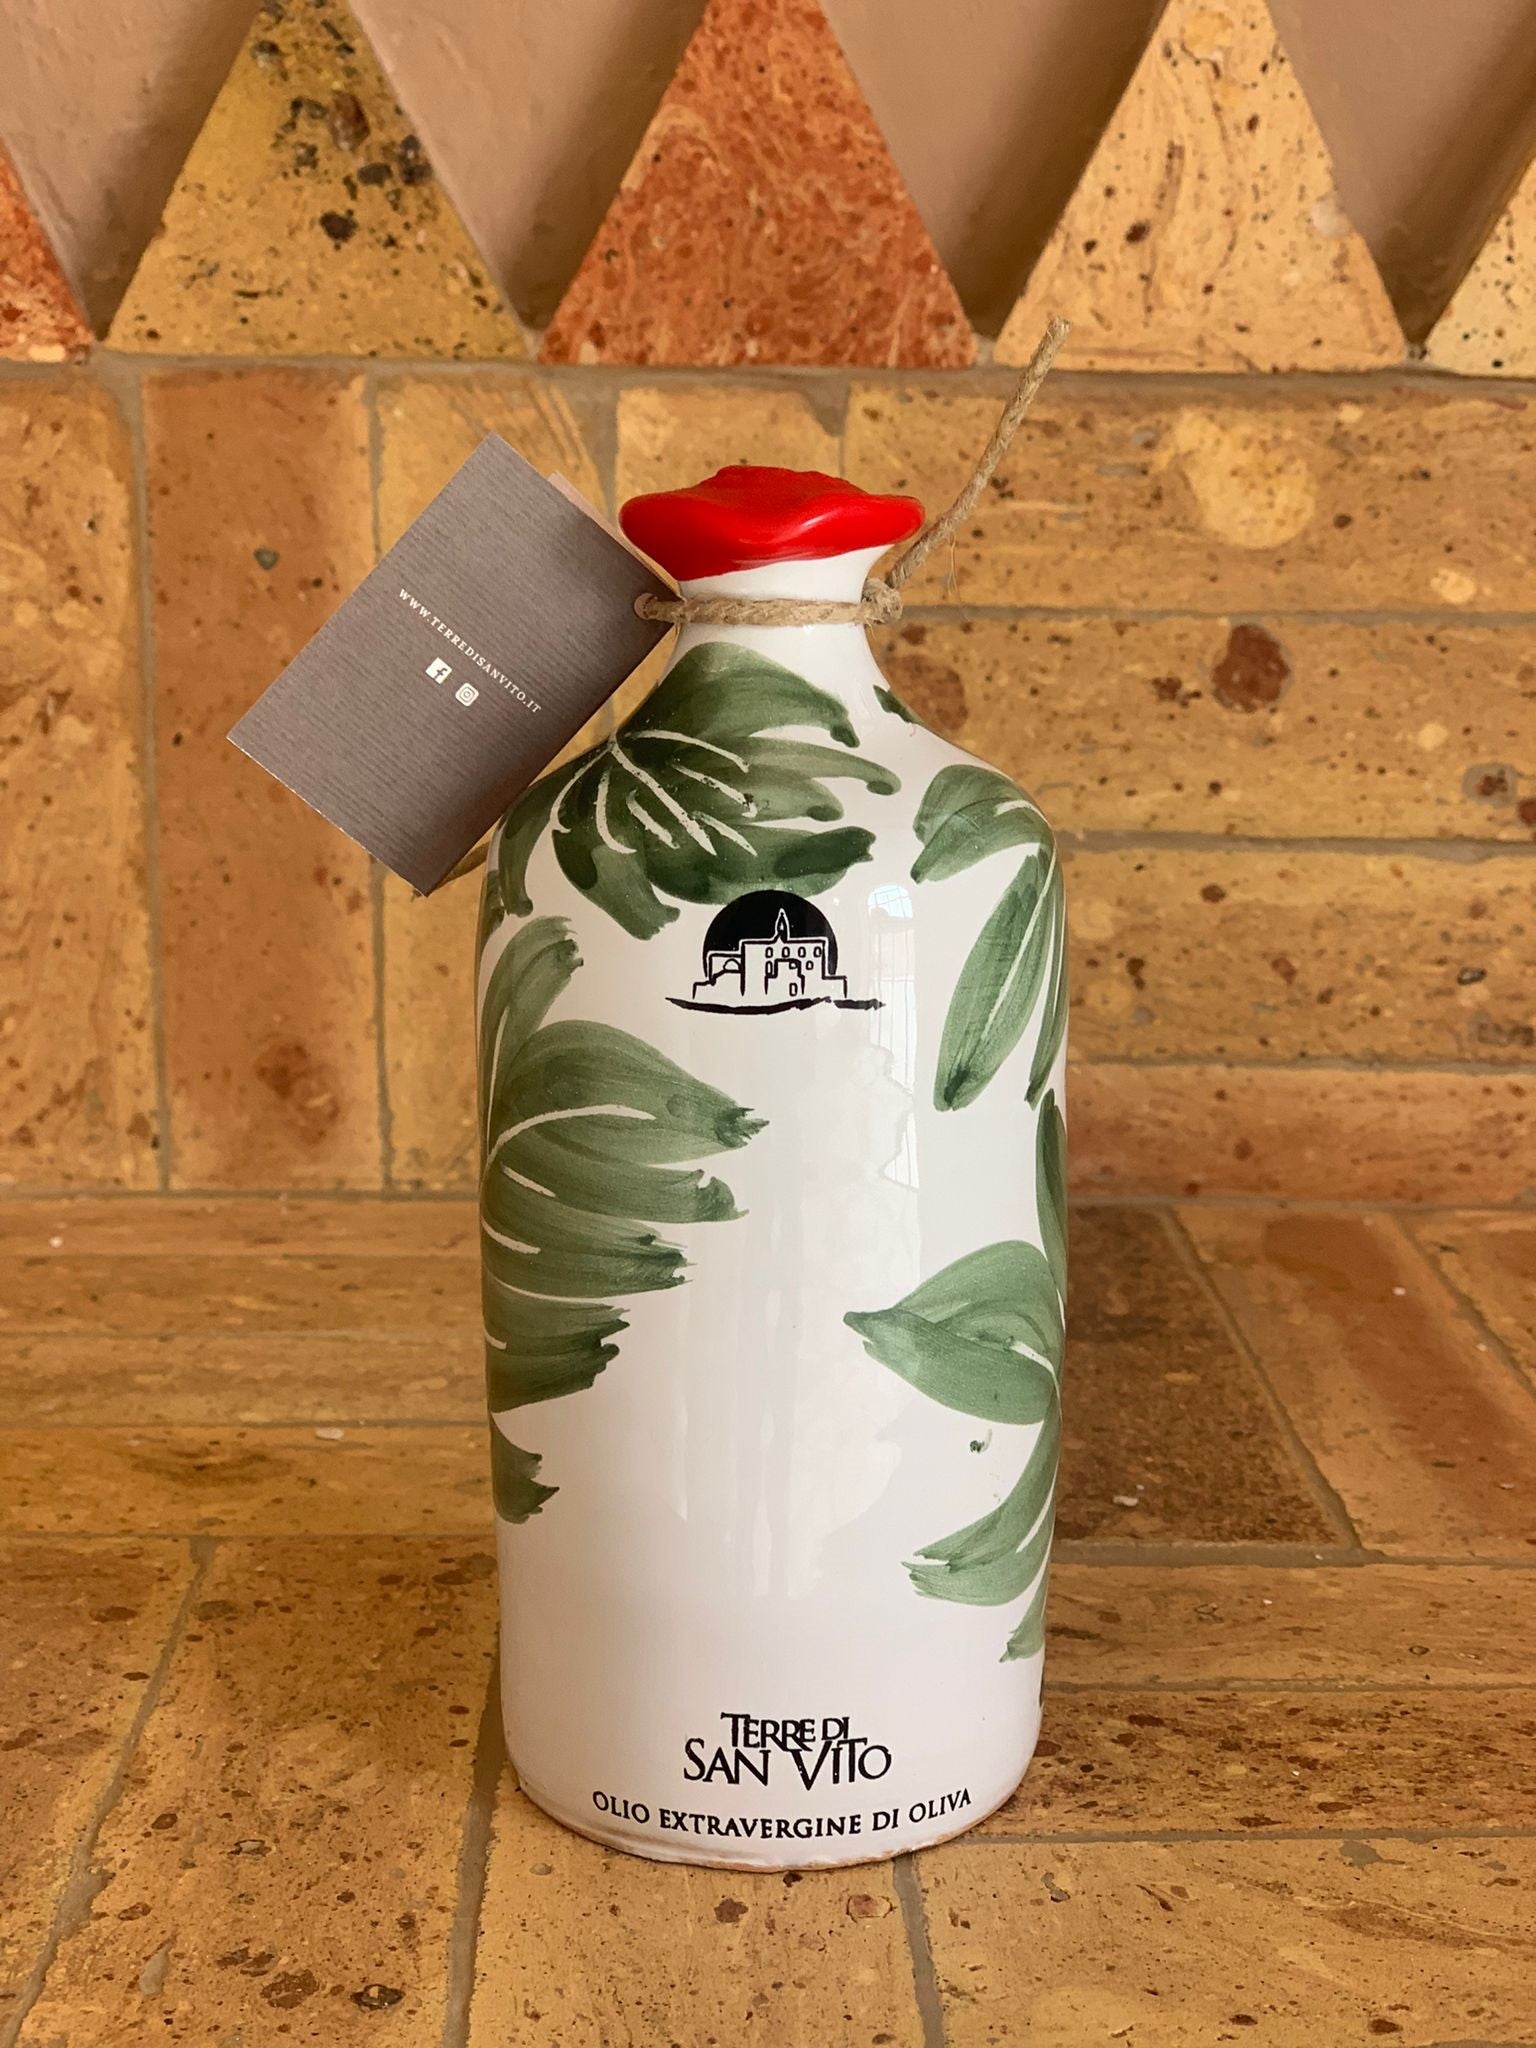 NEW IN: Leaf Patterned Terracotta Jar – extra virgin olive oil